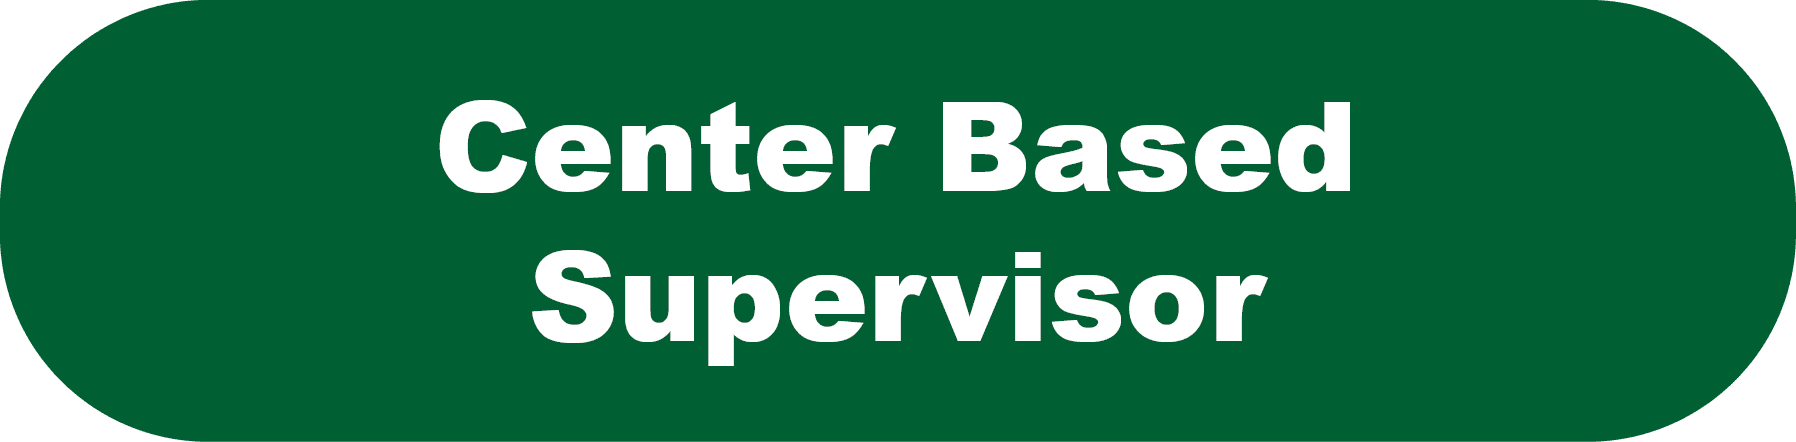 Center Based Supervisor